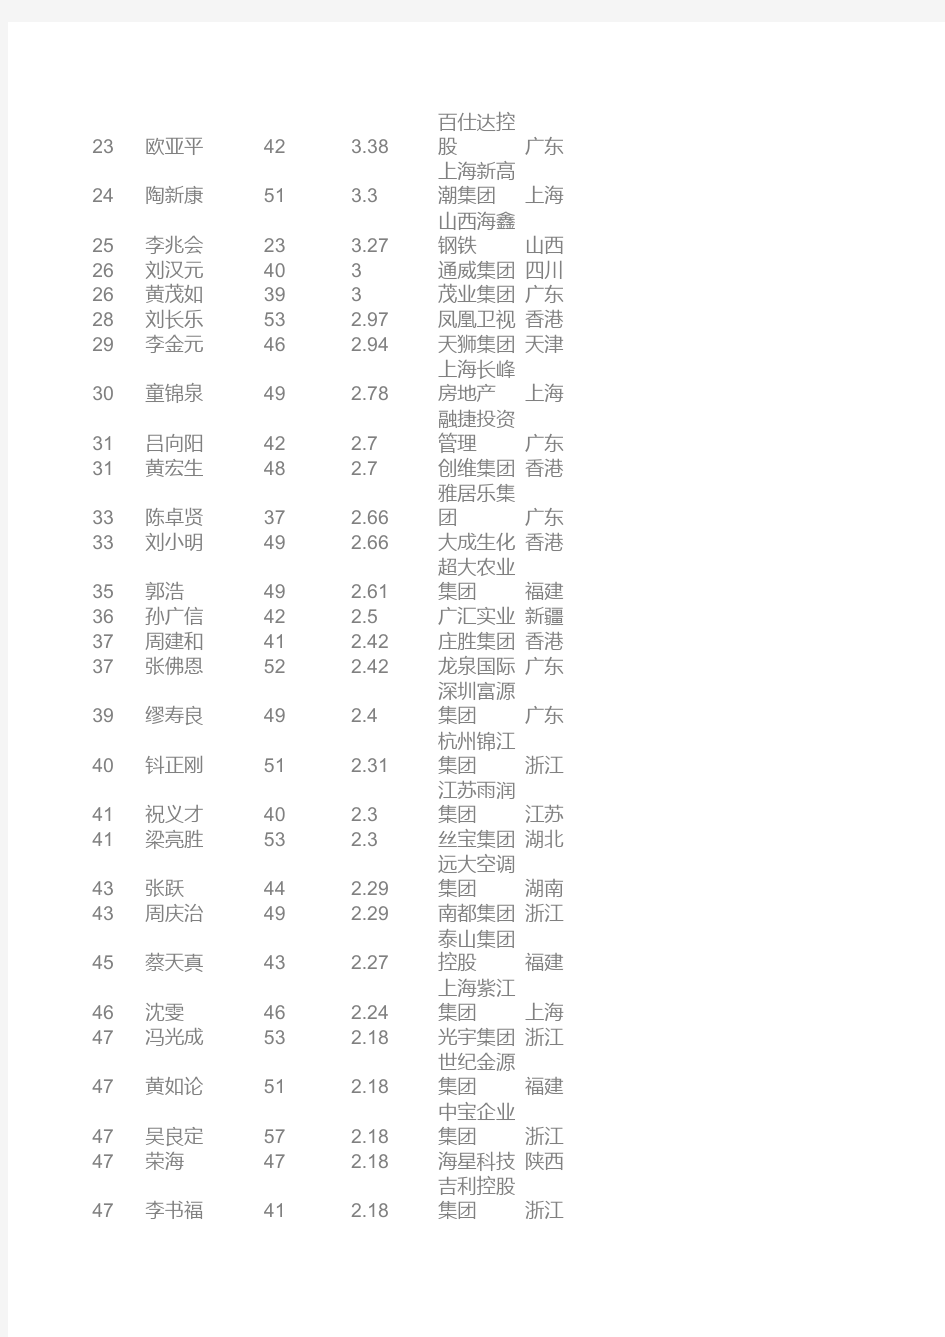 2004福布斯中国富豪排行榜